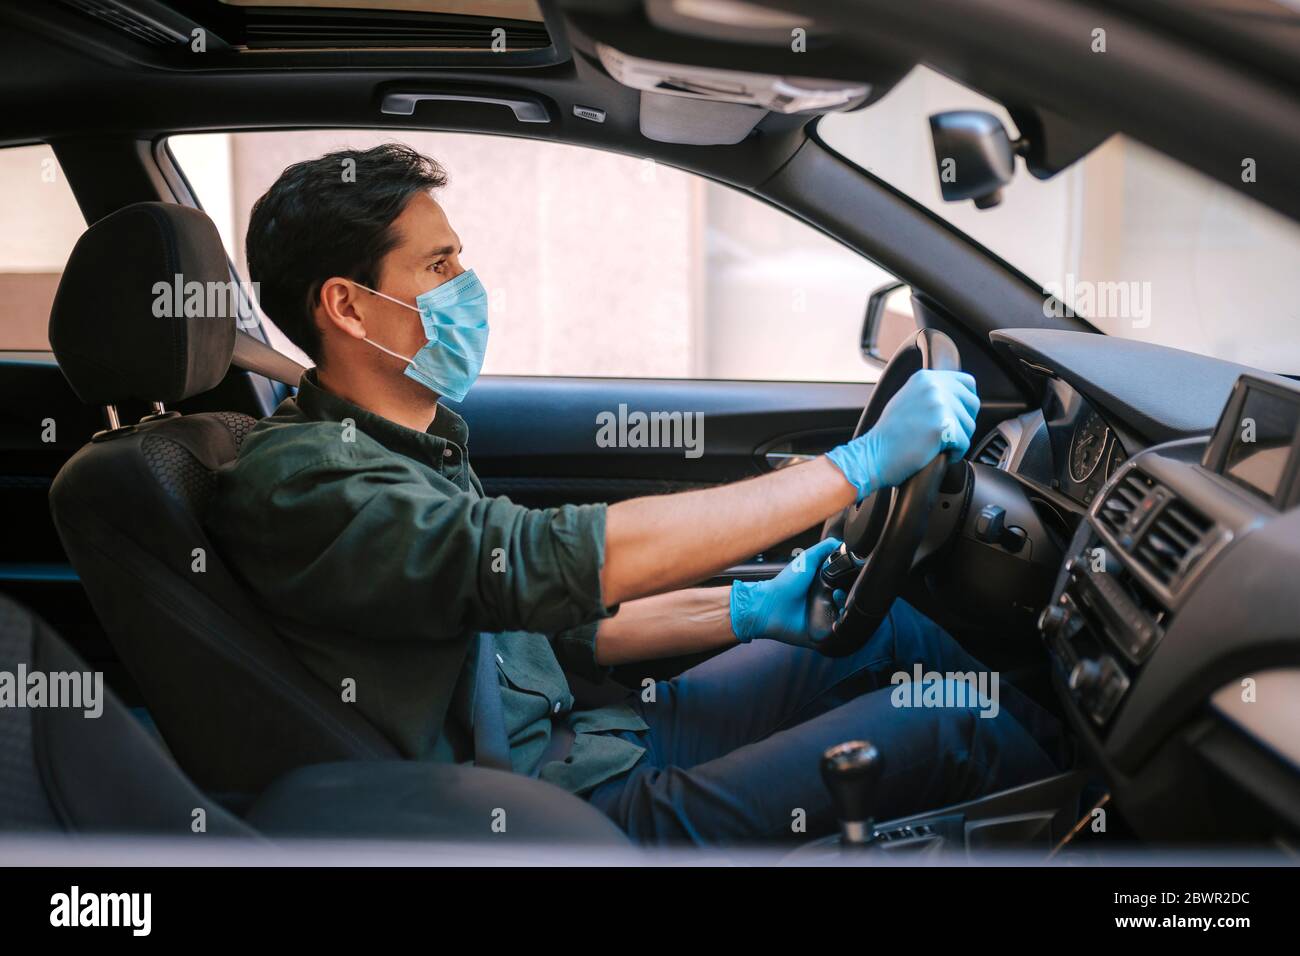 Ein Autofahrer legt während einer Epidemie eine medizinische Maske an, ein Taxifahrer in einer Maske, Schutz vor dem Virus. Fahrer im weißen Auto. Coronavirus, d Stockfoto